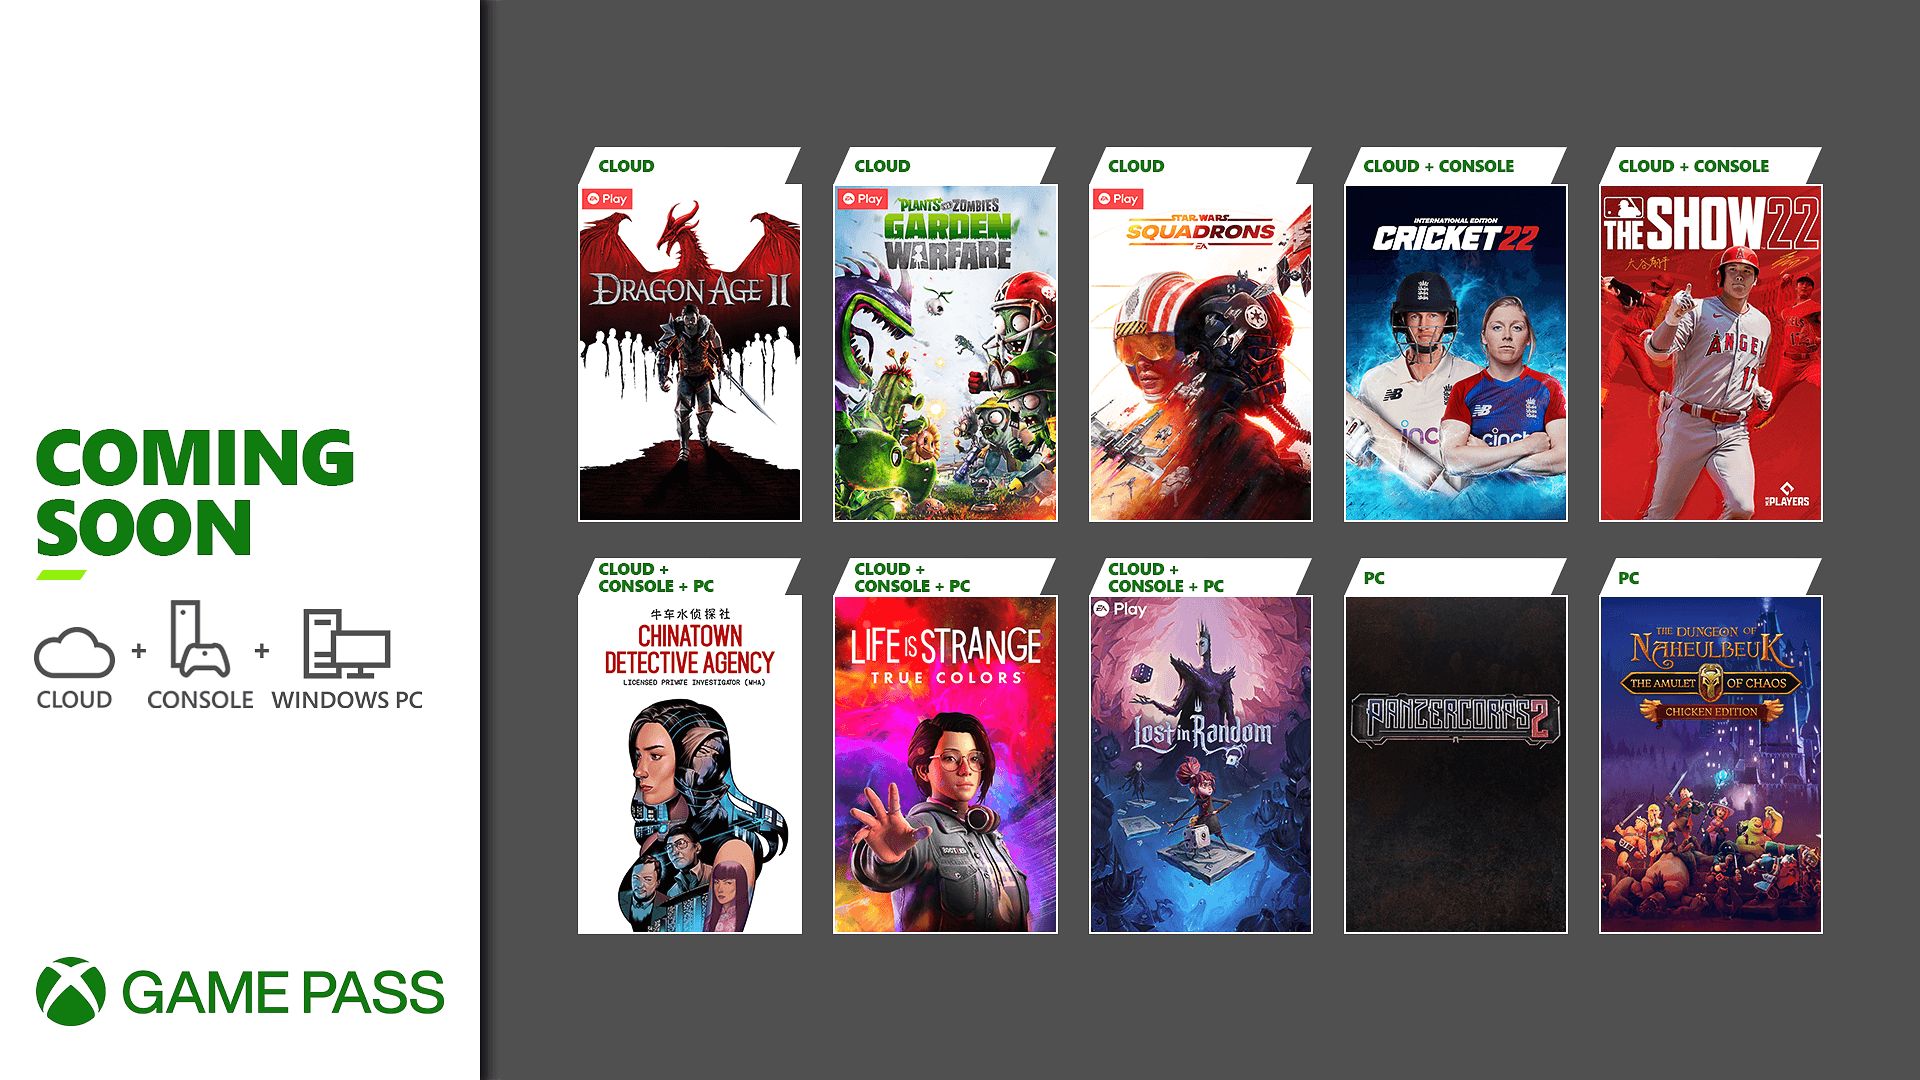 Estos son los nuevos títulos que llegan en abril a Xbox Game Pass - Hace escasos minutos Microsoft ha revelado el listado de los primeros juegos que se añadirán a Xbox Game Pass el mes de abril.